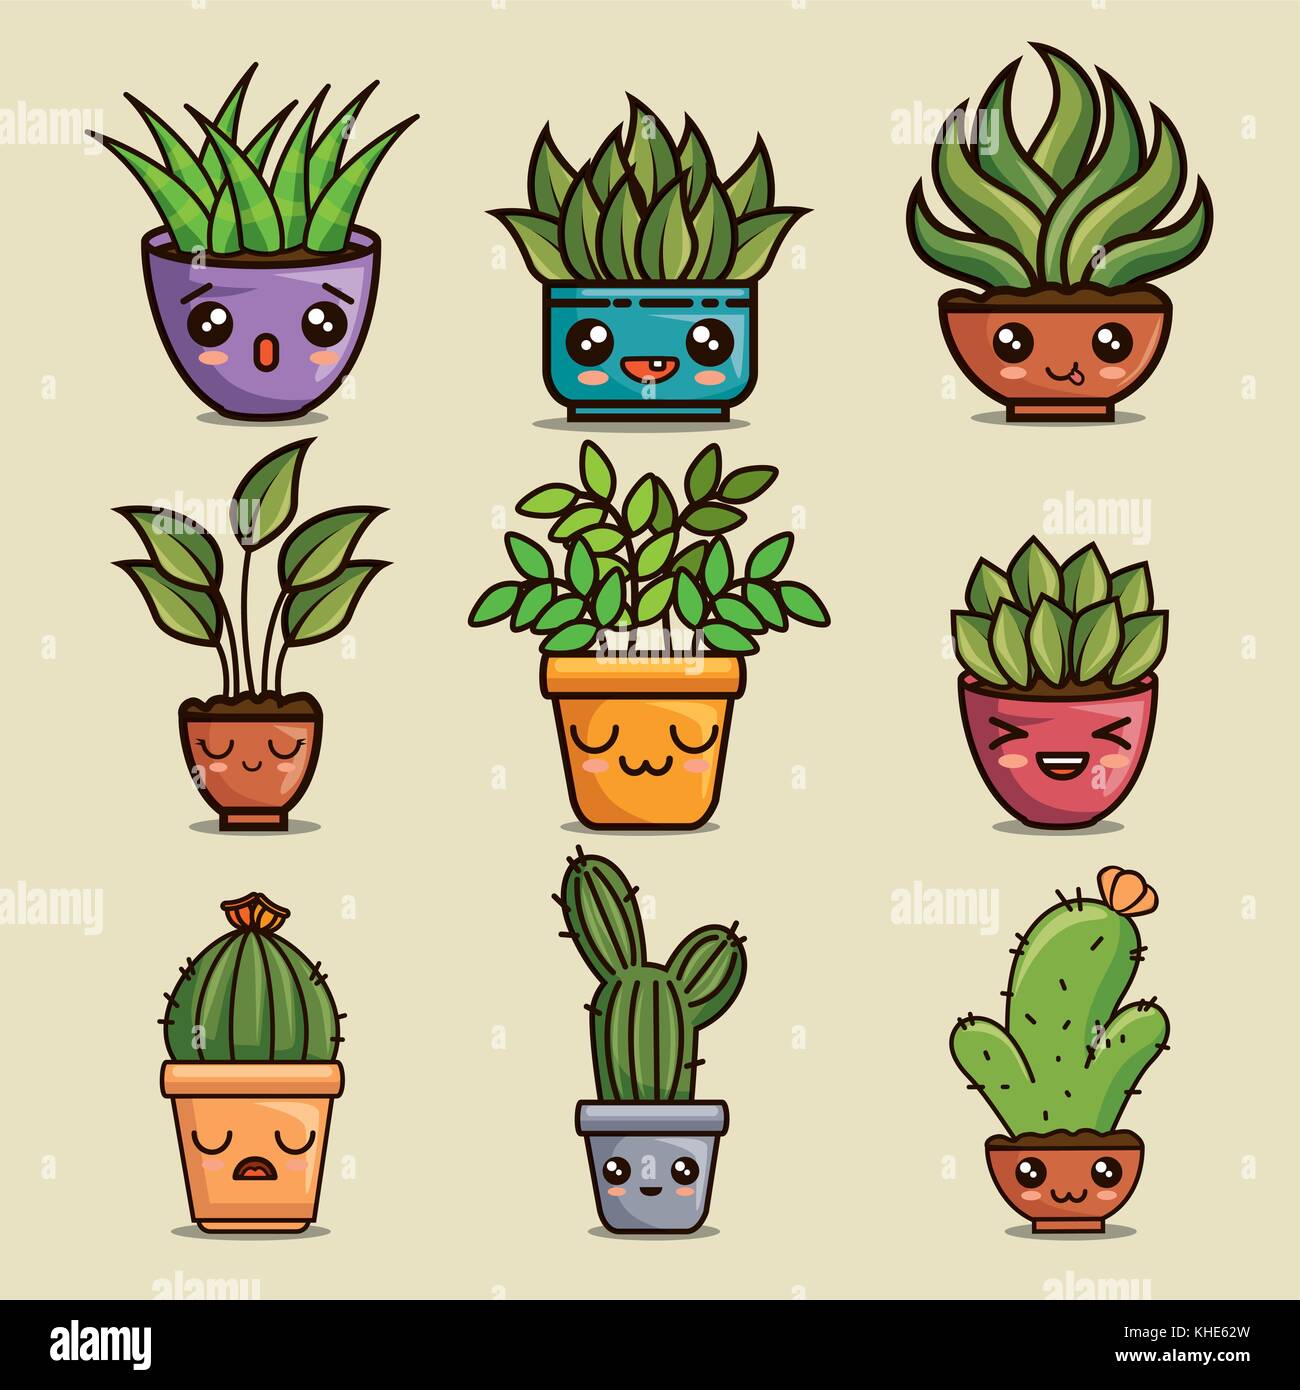 cute lovely kawaii house plants cartoons Stock Vector Image & Art - Alamy